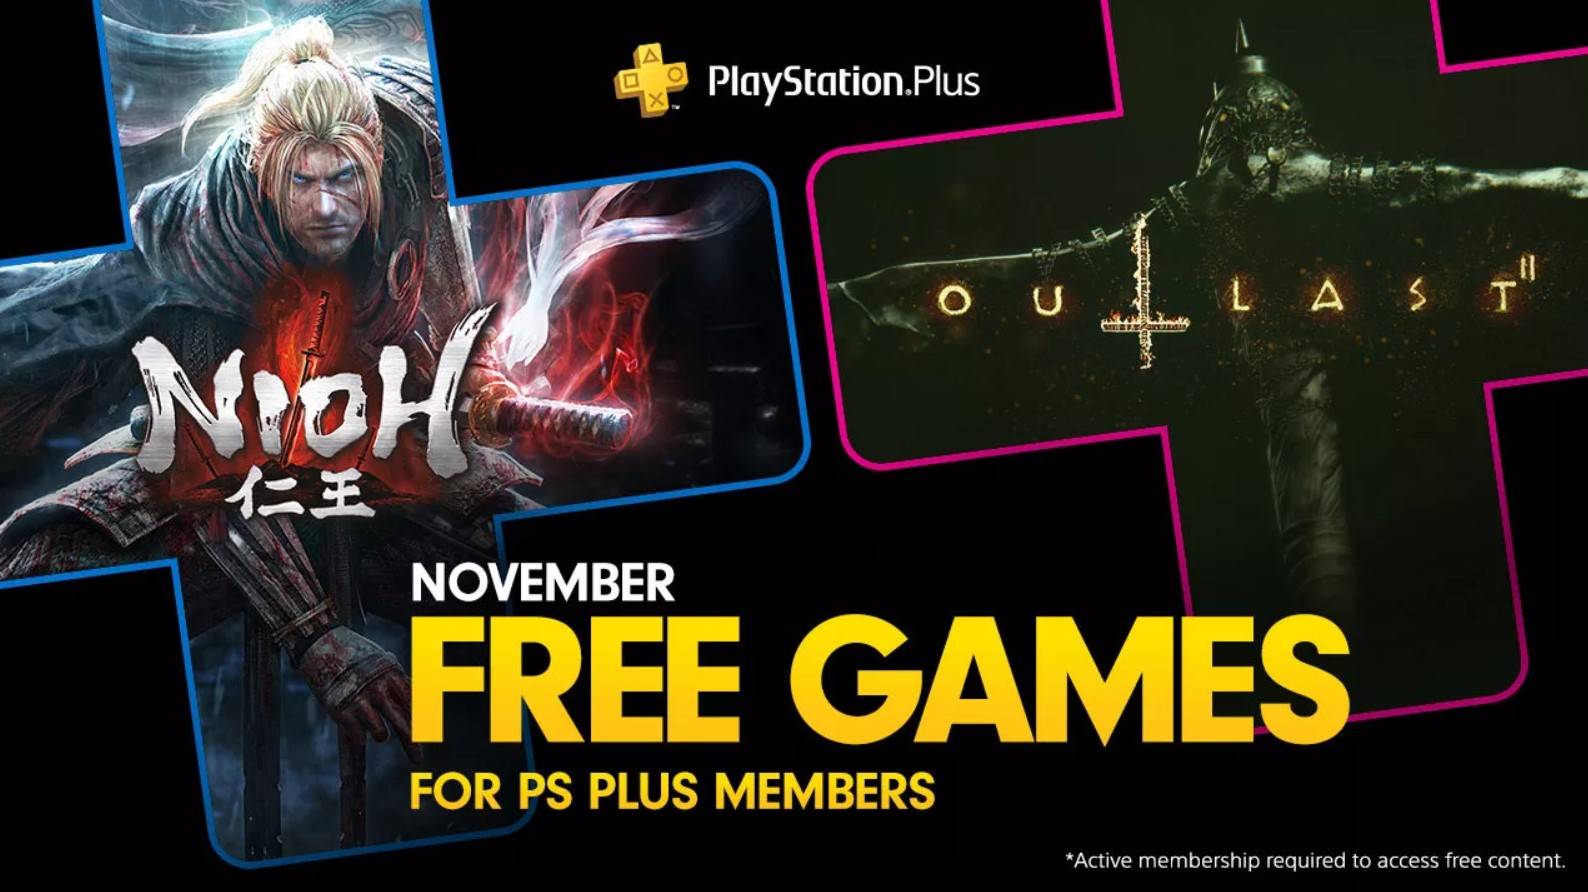 A PlayStation anunciou oficialmente a sua seleção de jogos gratuitos do PlayStation Plus nesta quarta feira. Os assinantes do serviço irão receber dois jogos: Outlast 2 e Nioh.